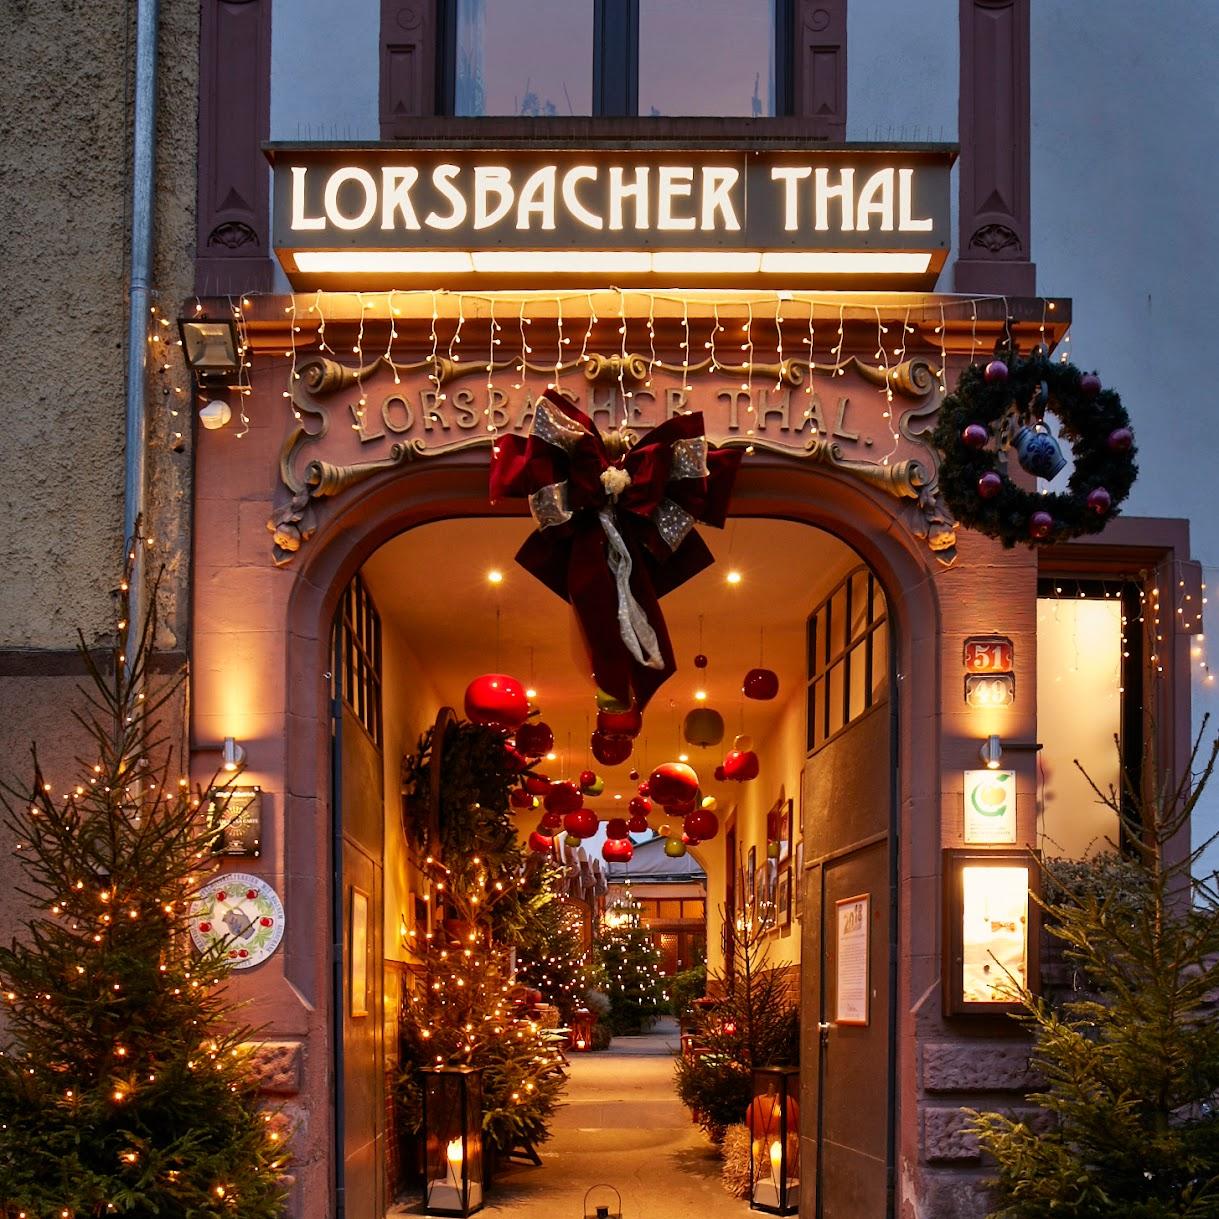 Restaurant "Daheim im Lorsbacher Thal" in Frankfurt am Main